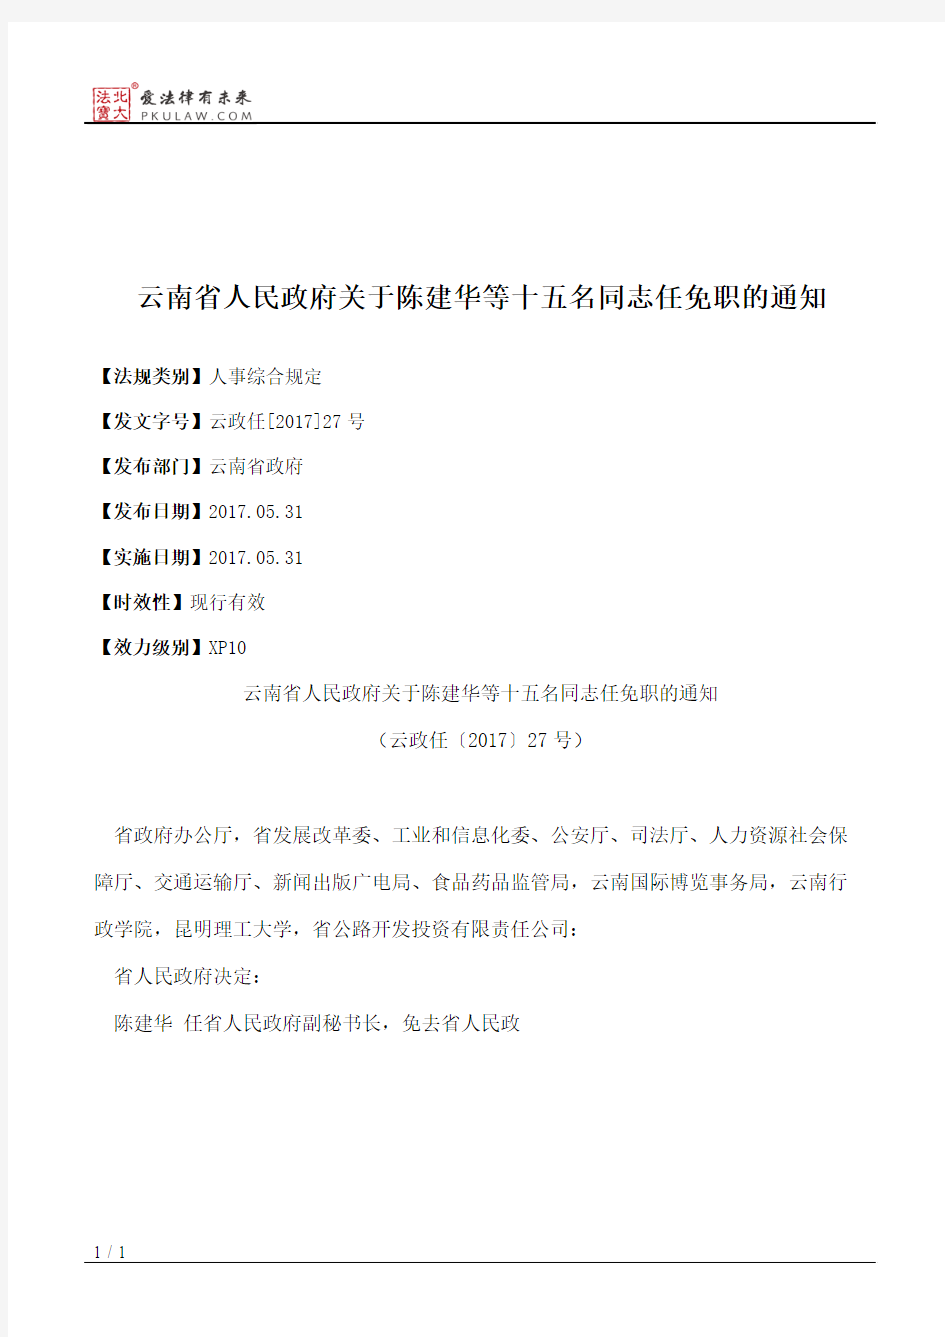 云南省人民政府关于陈建华等十五名同志任免职的通知